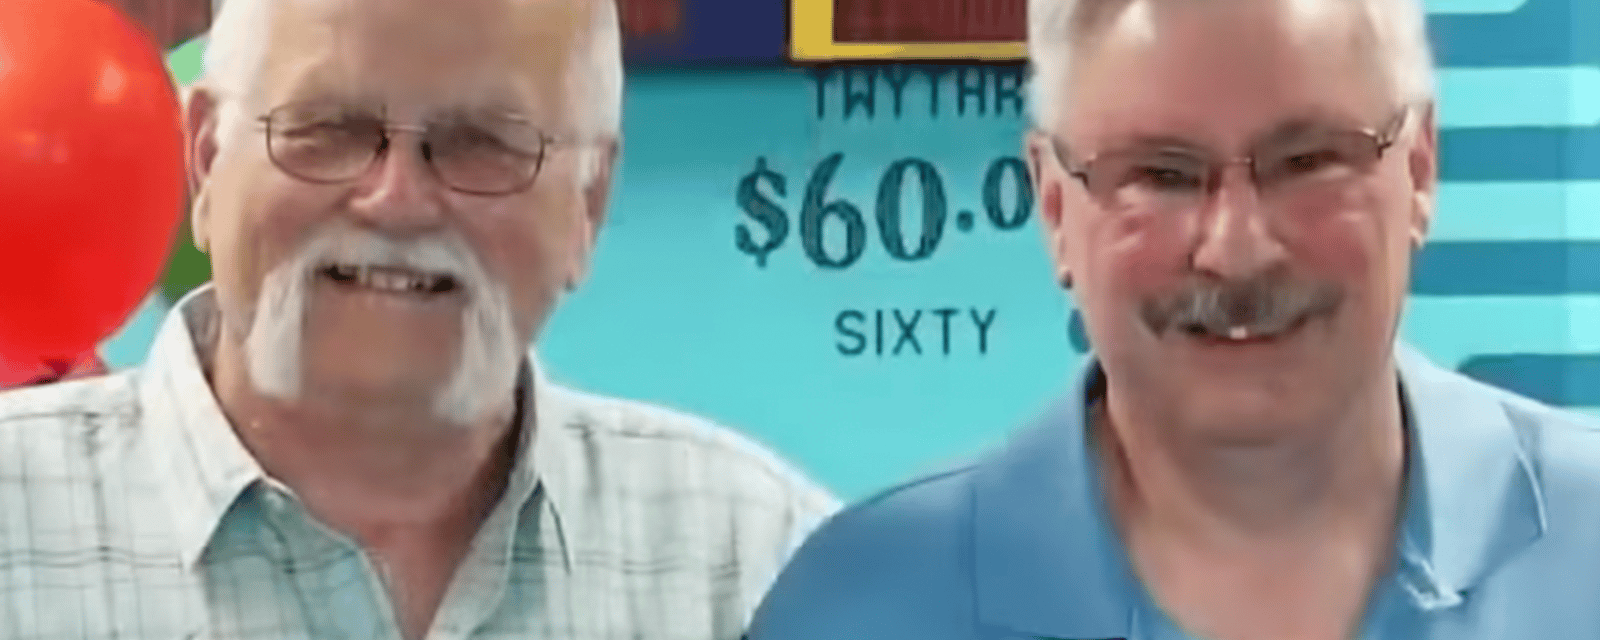 Un homme gagne 22 millions $ à la loterie et donne la moitié à son meilleur ami